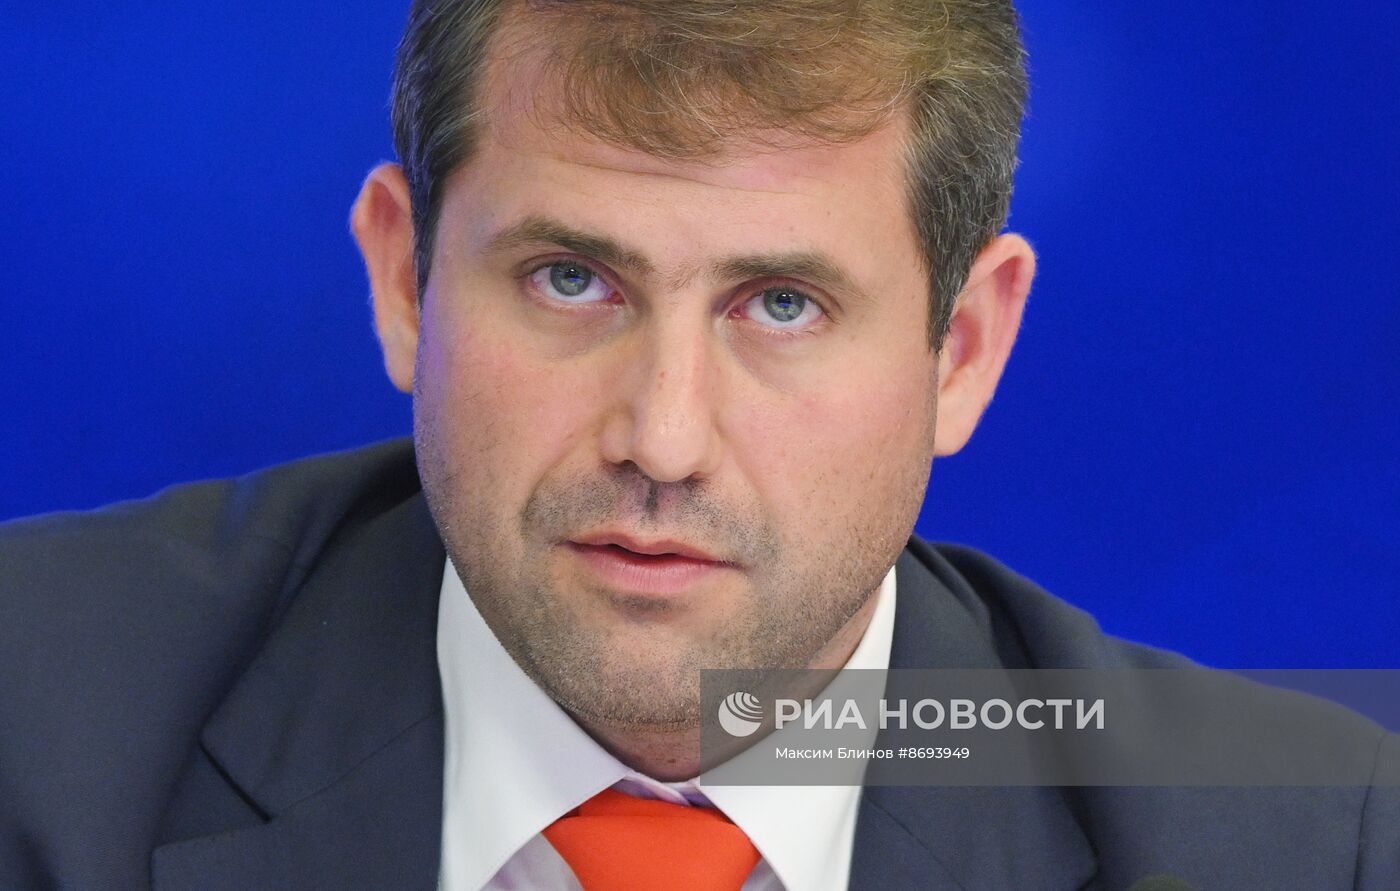 П/к лидера молдавского политического блока "Победа" И. Шора